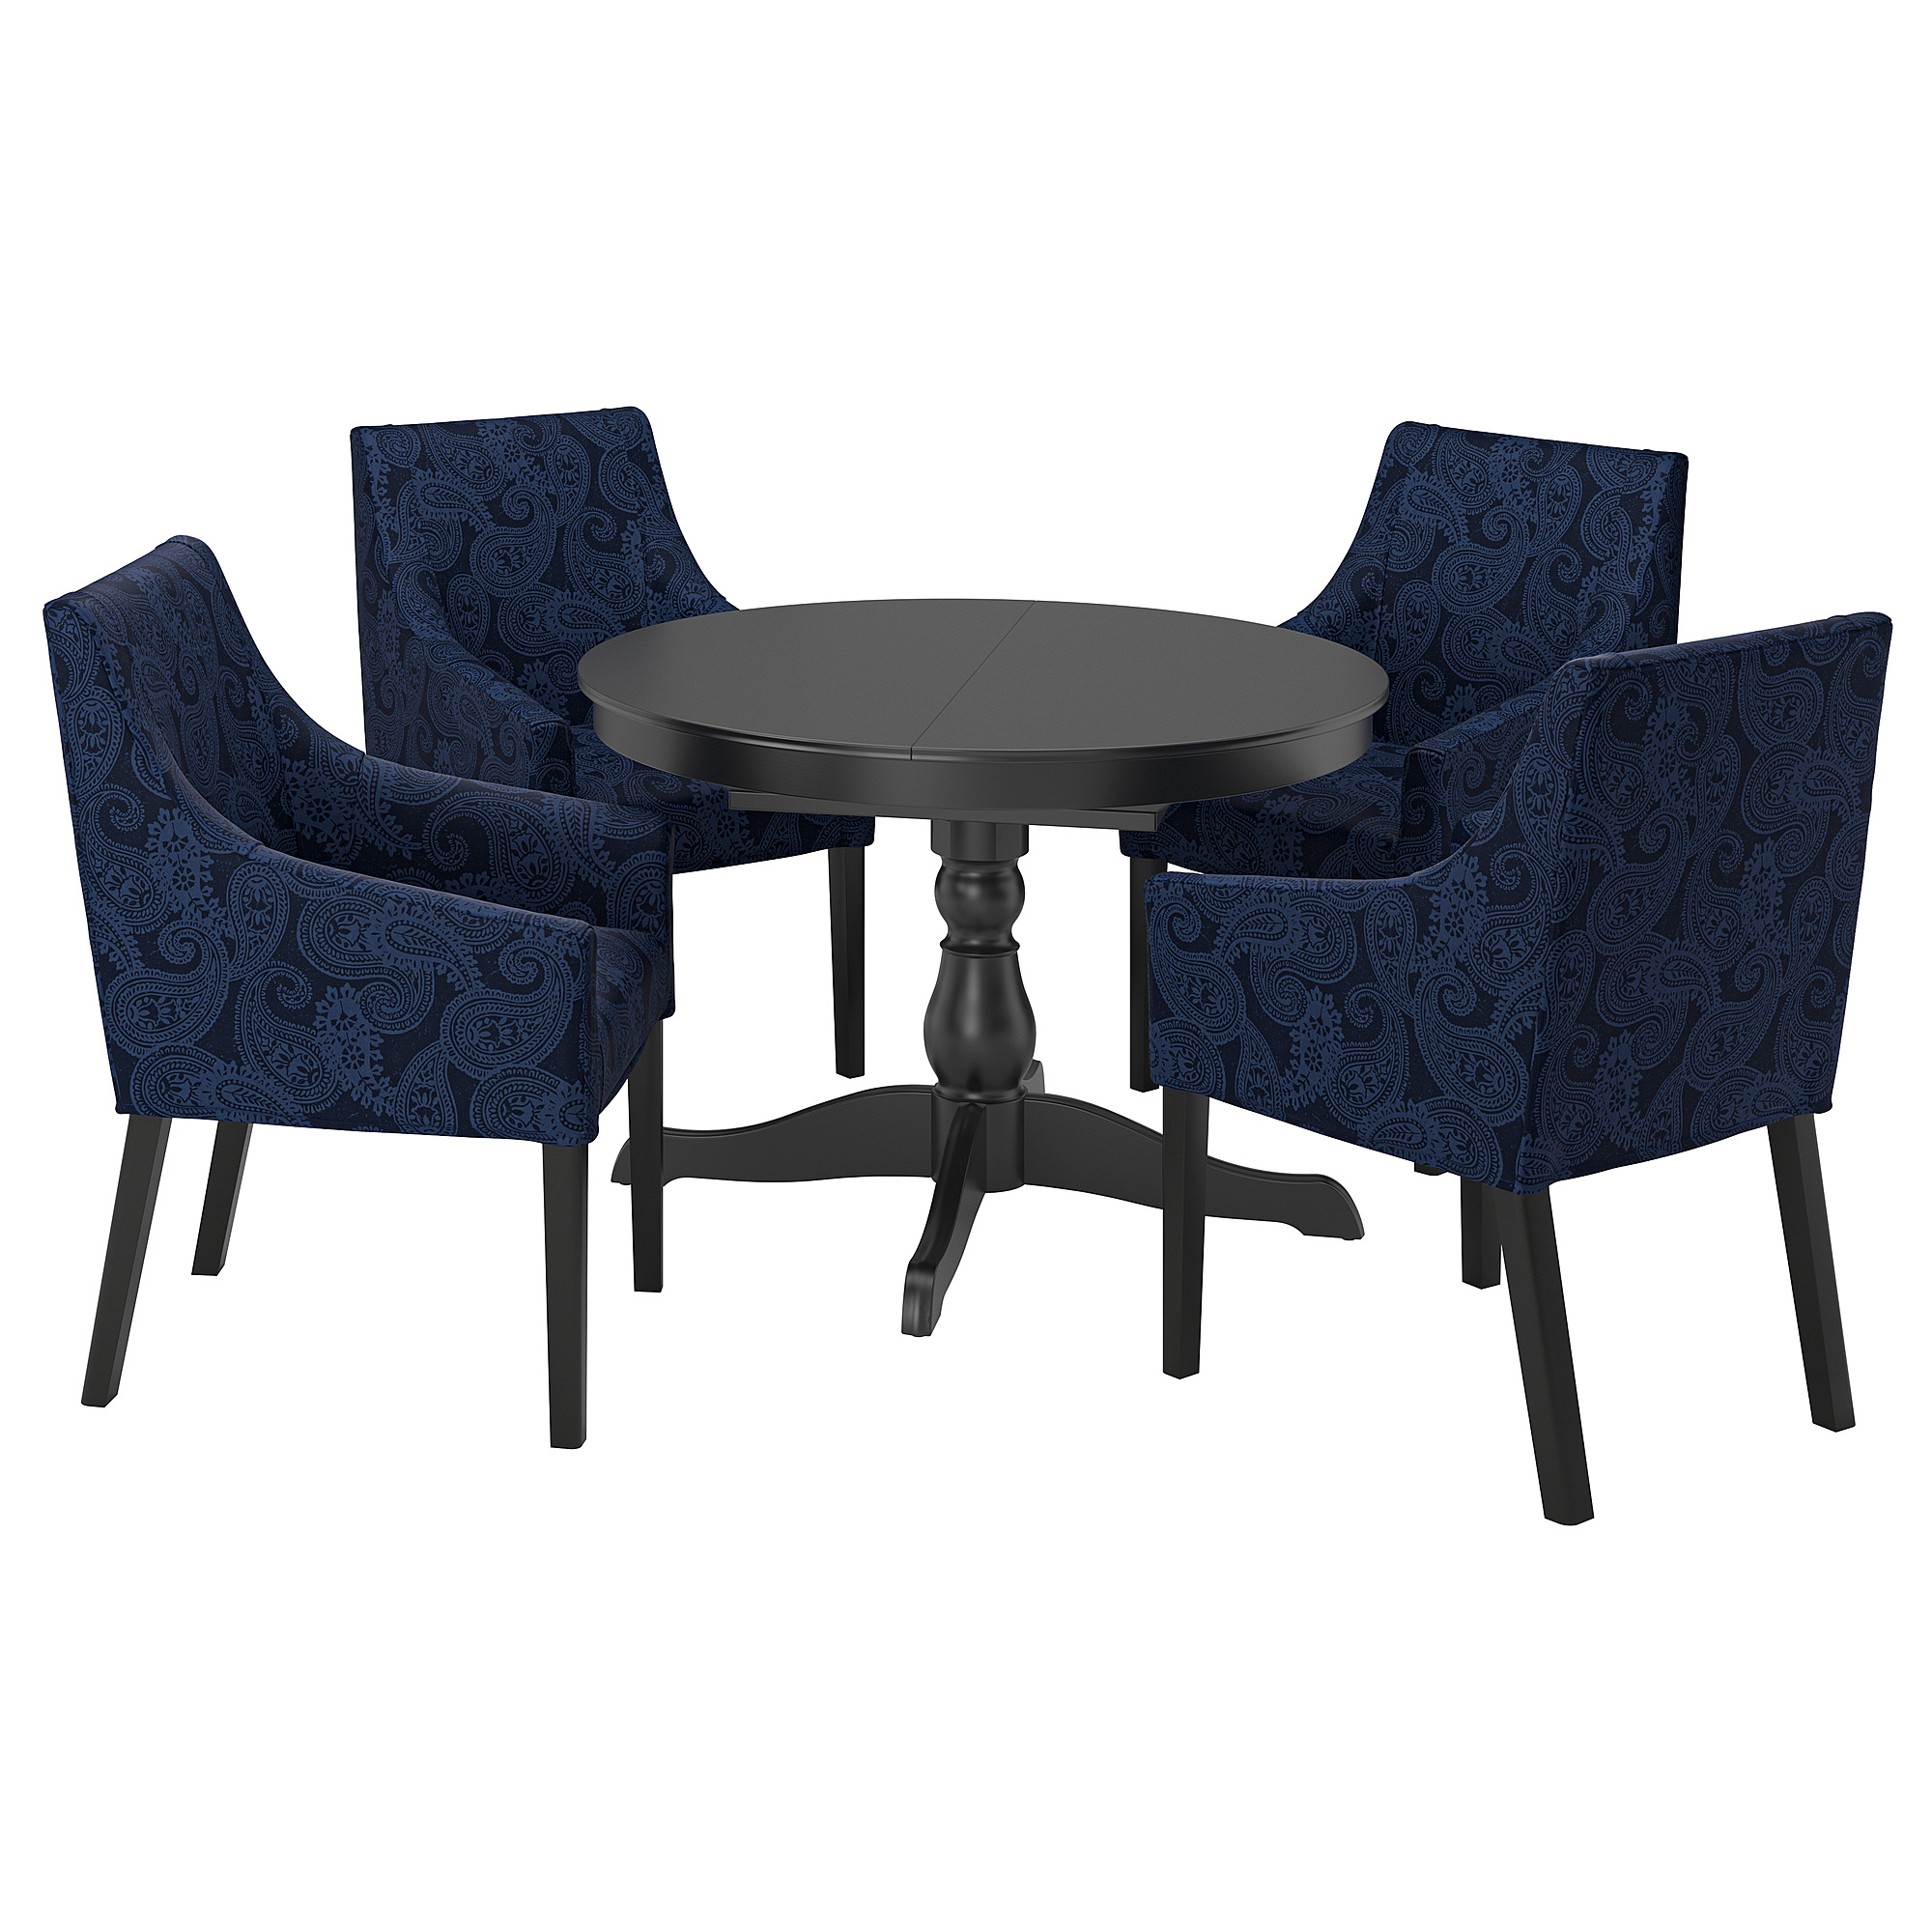 INGATORP/SAKARIAS table and 4 chairs